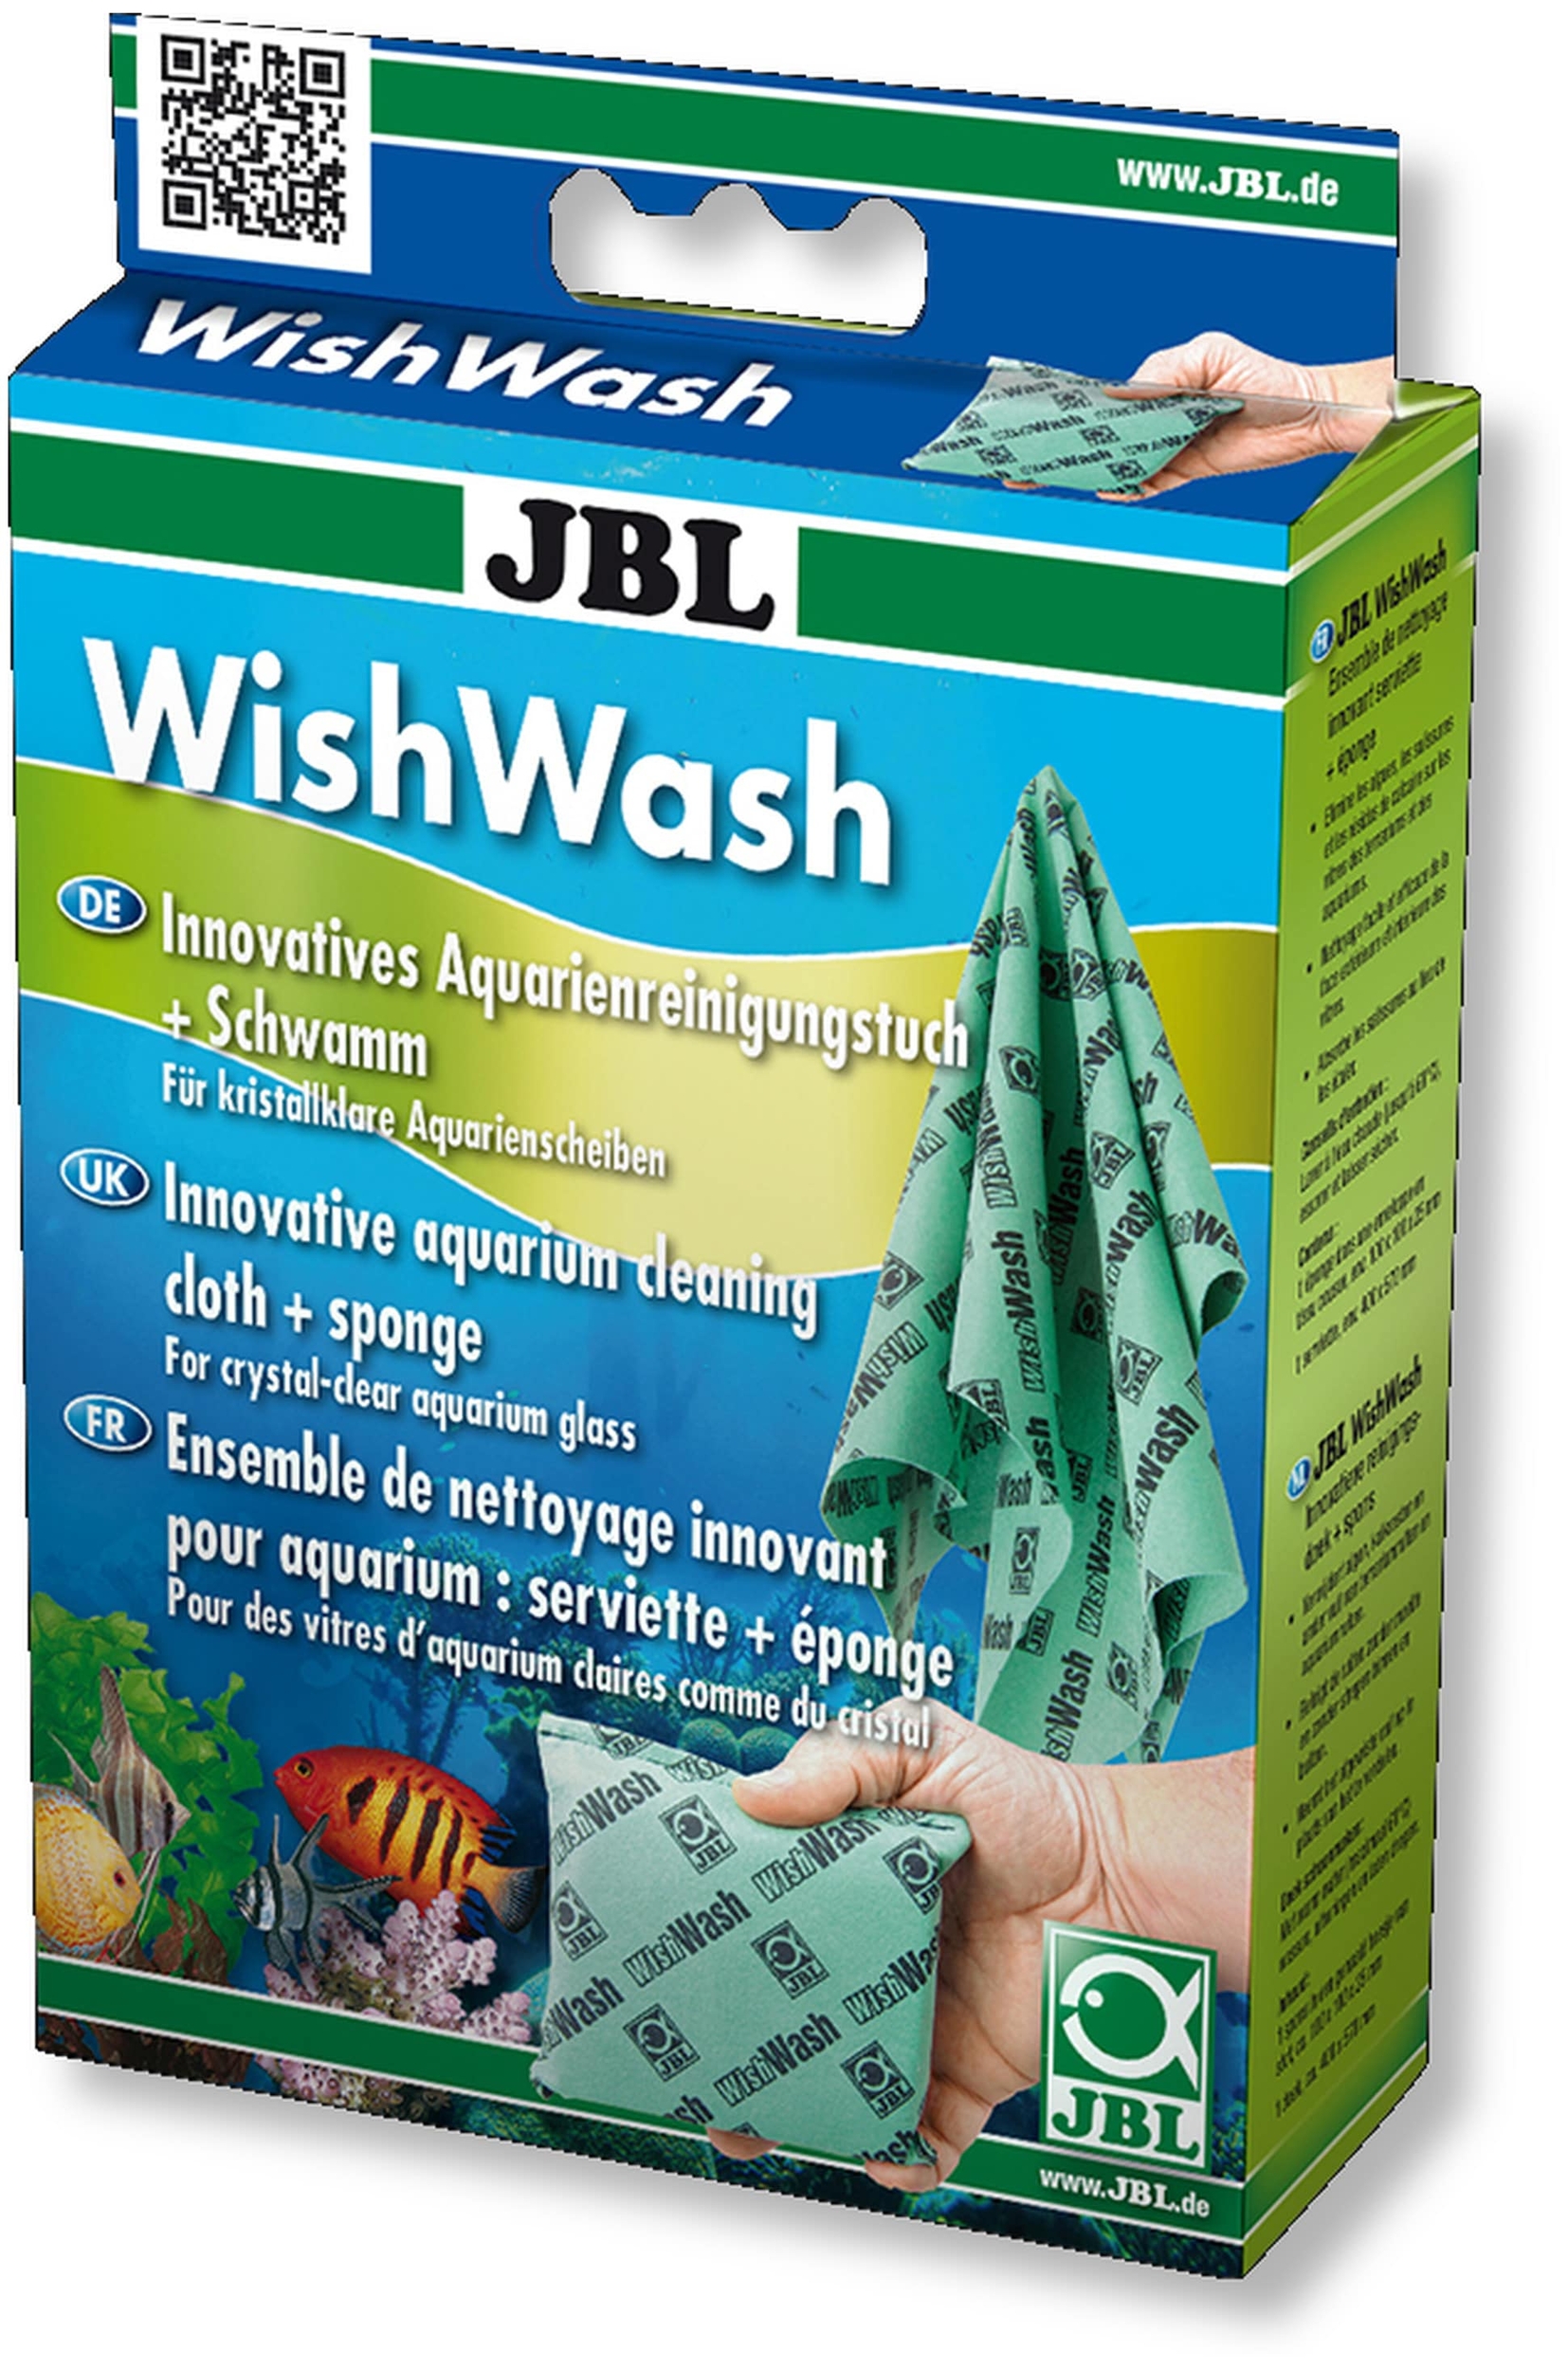 JBL WishWash set de nettoyage innovant pour aquarium (éponge + serviette)